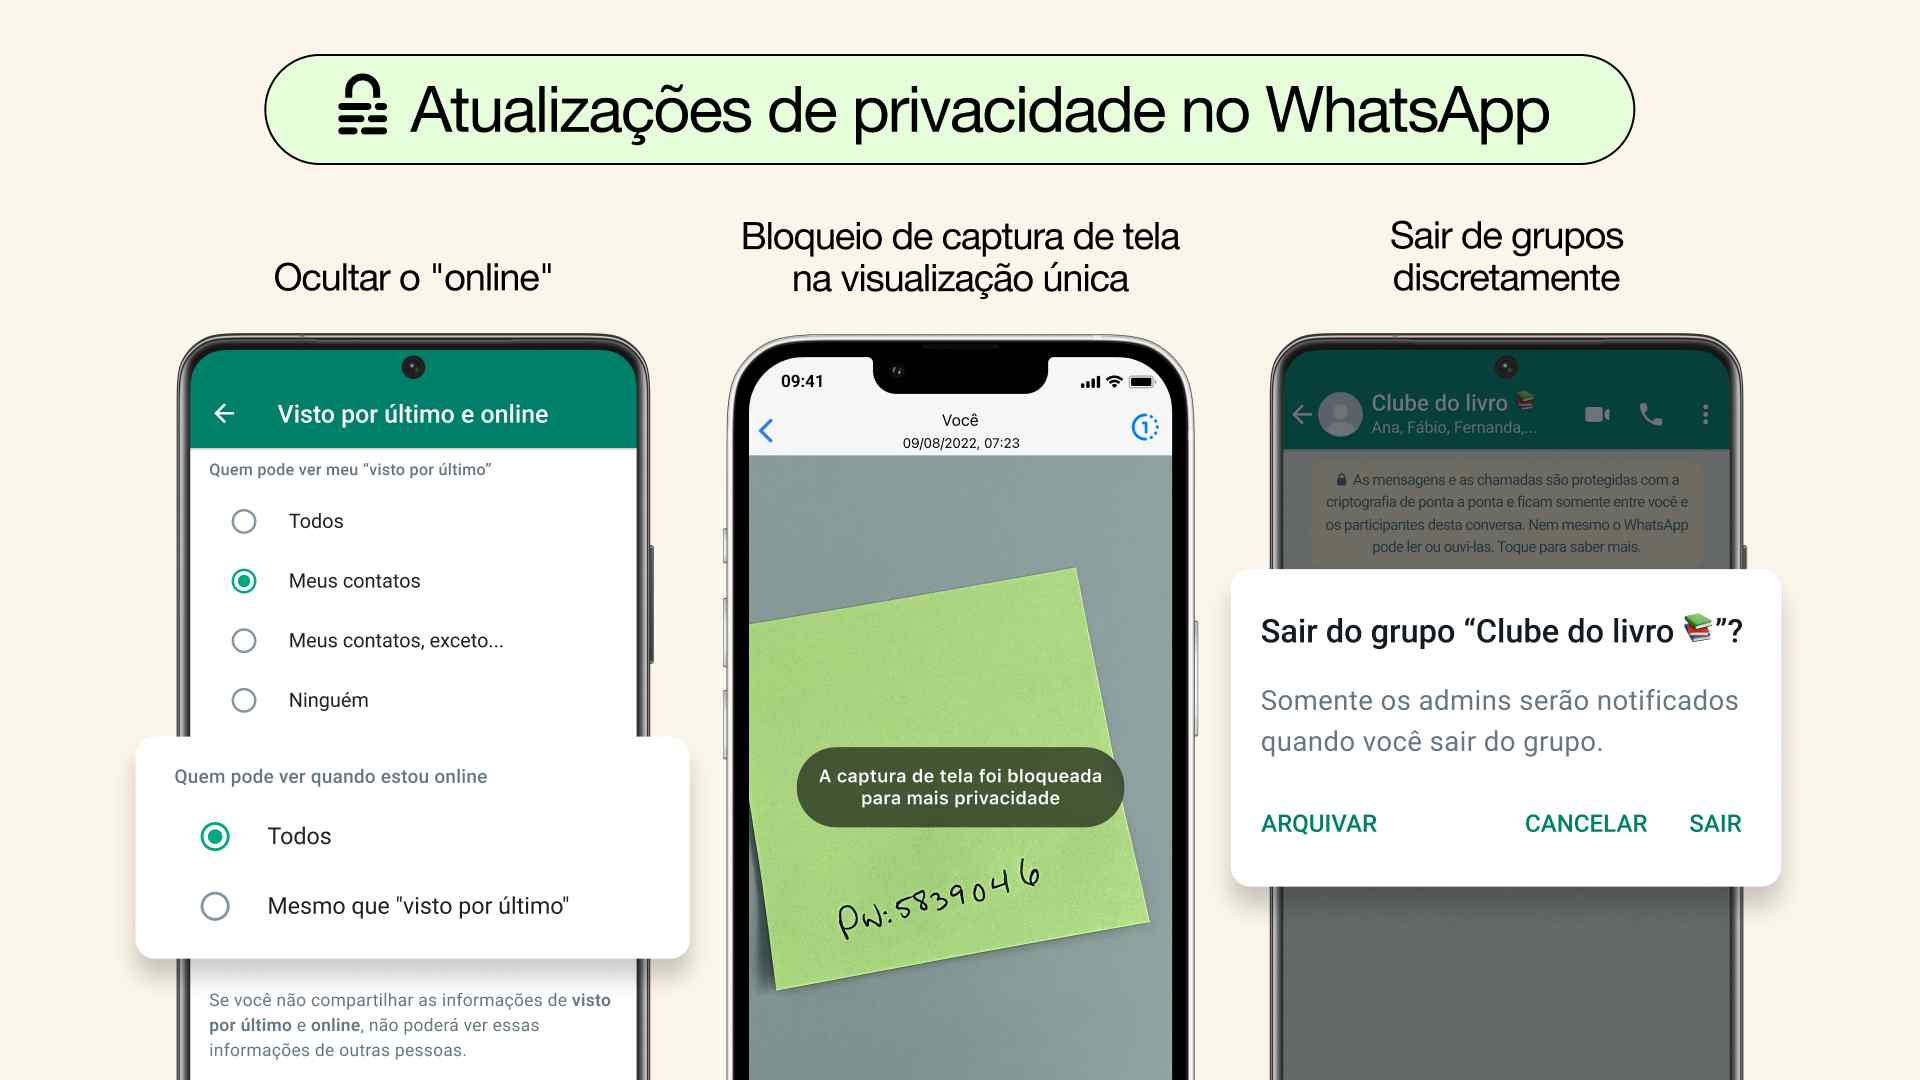 WhatsApp atulizações